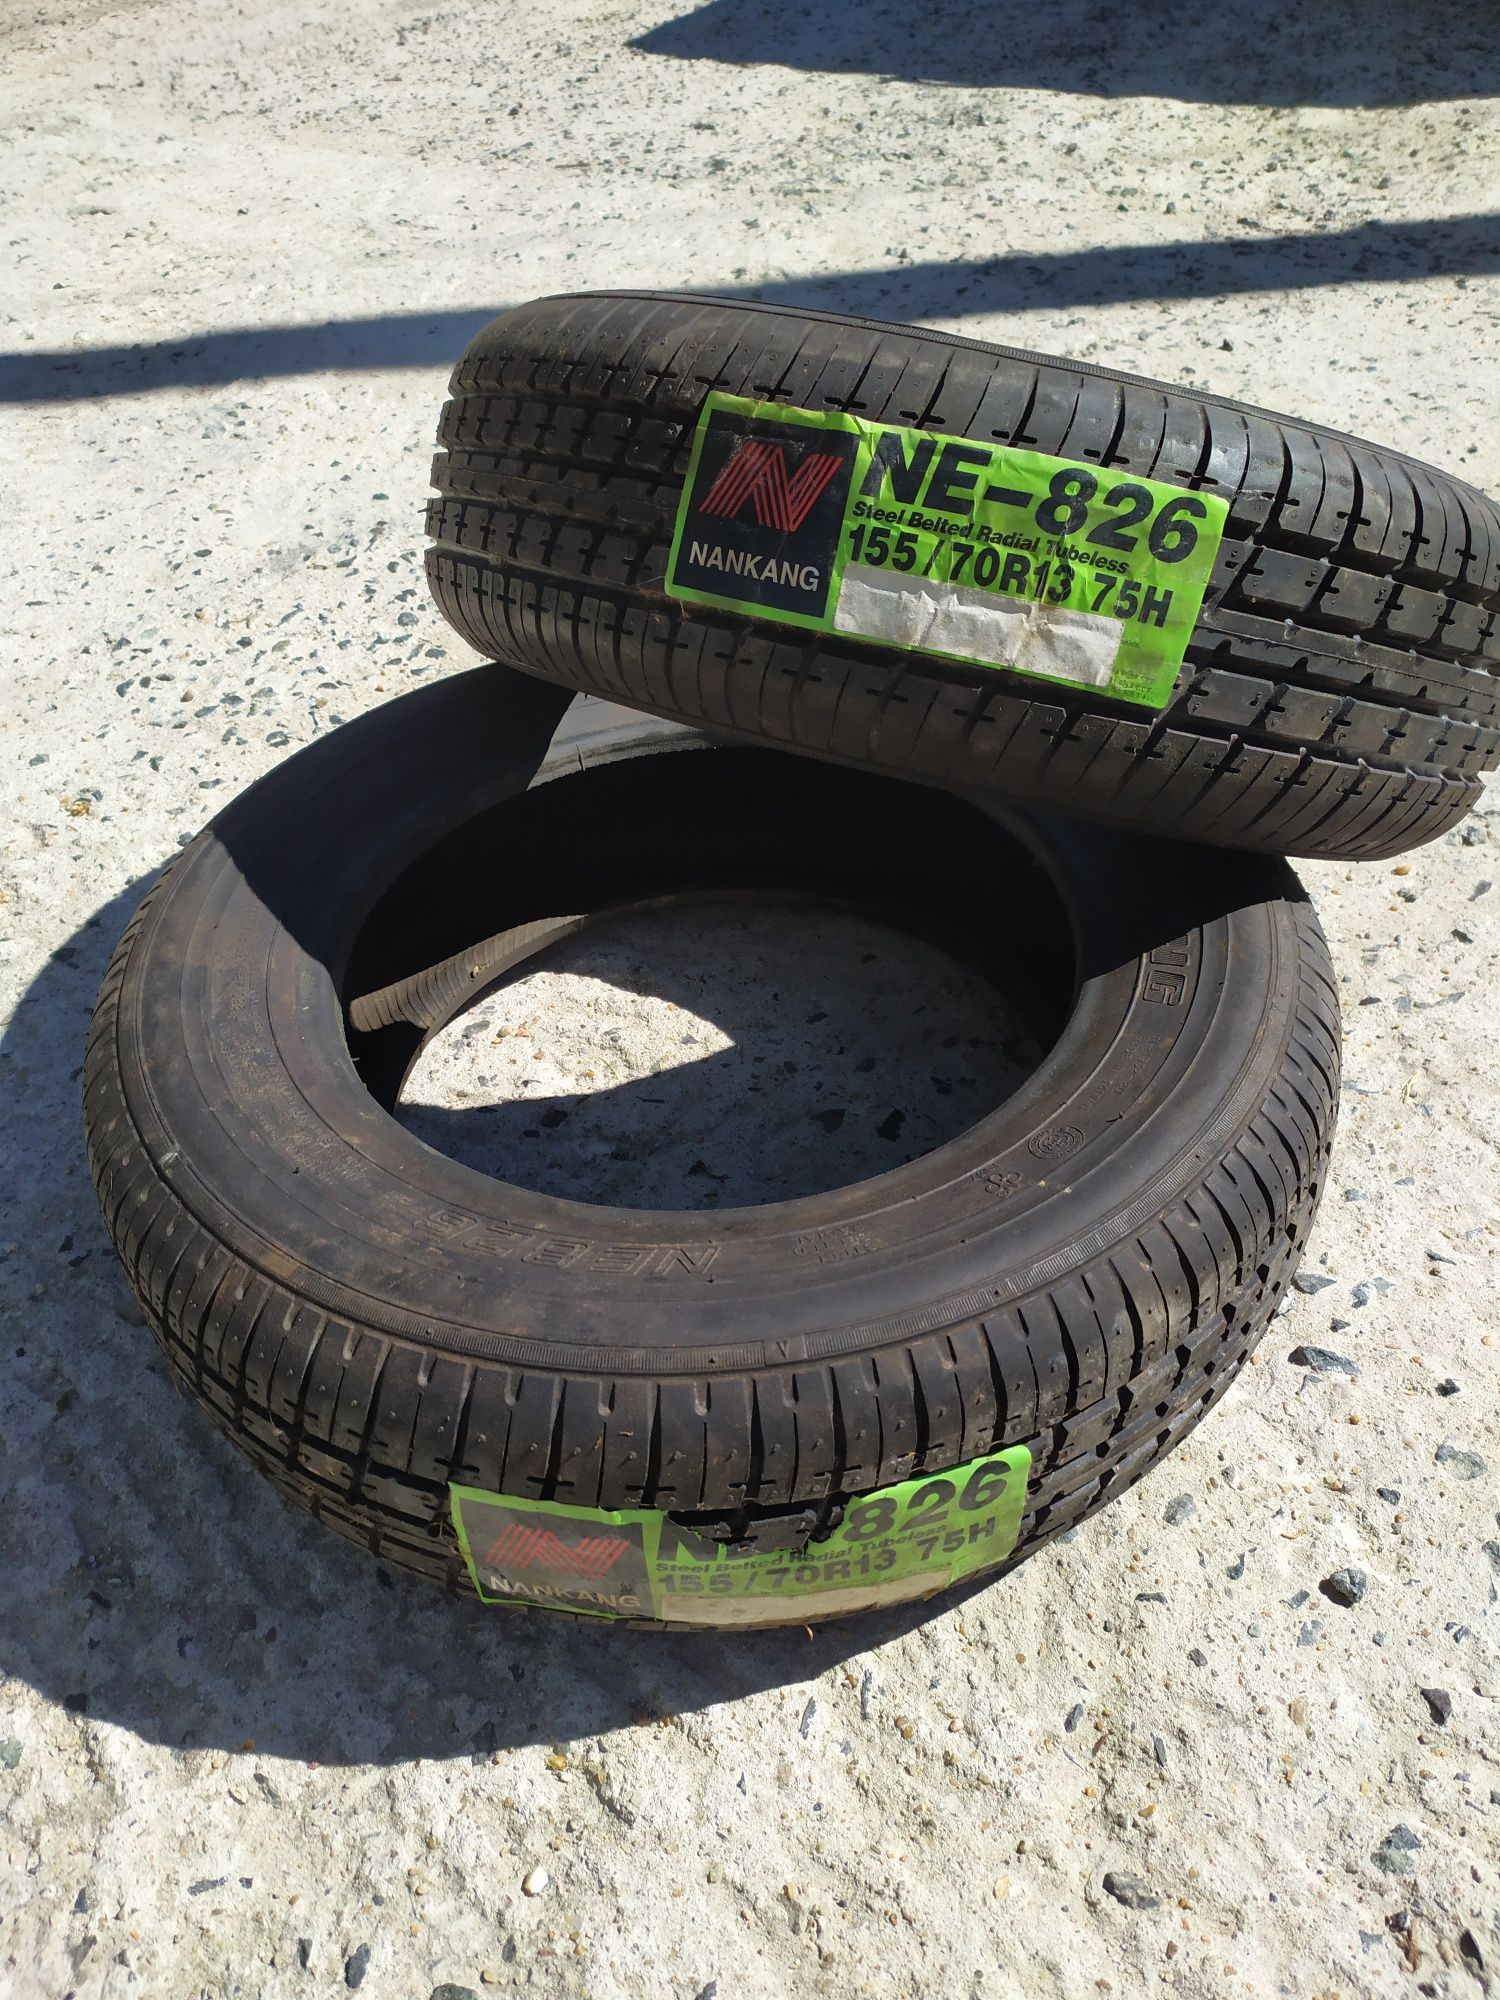 2 pneus novos NE-826,155/70R13 75H